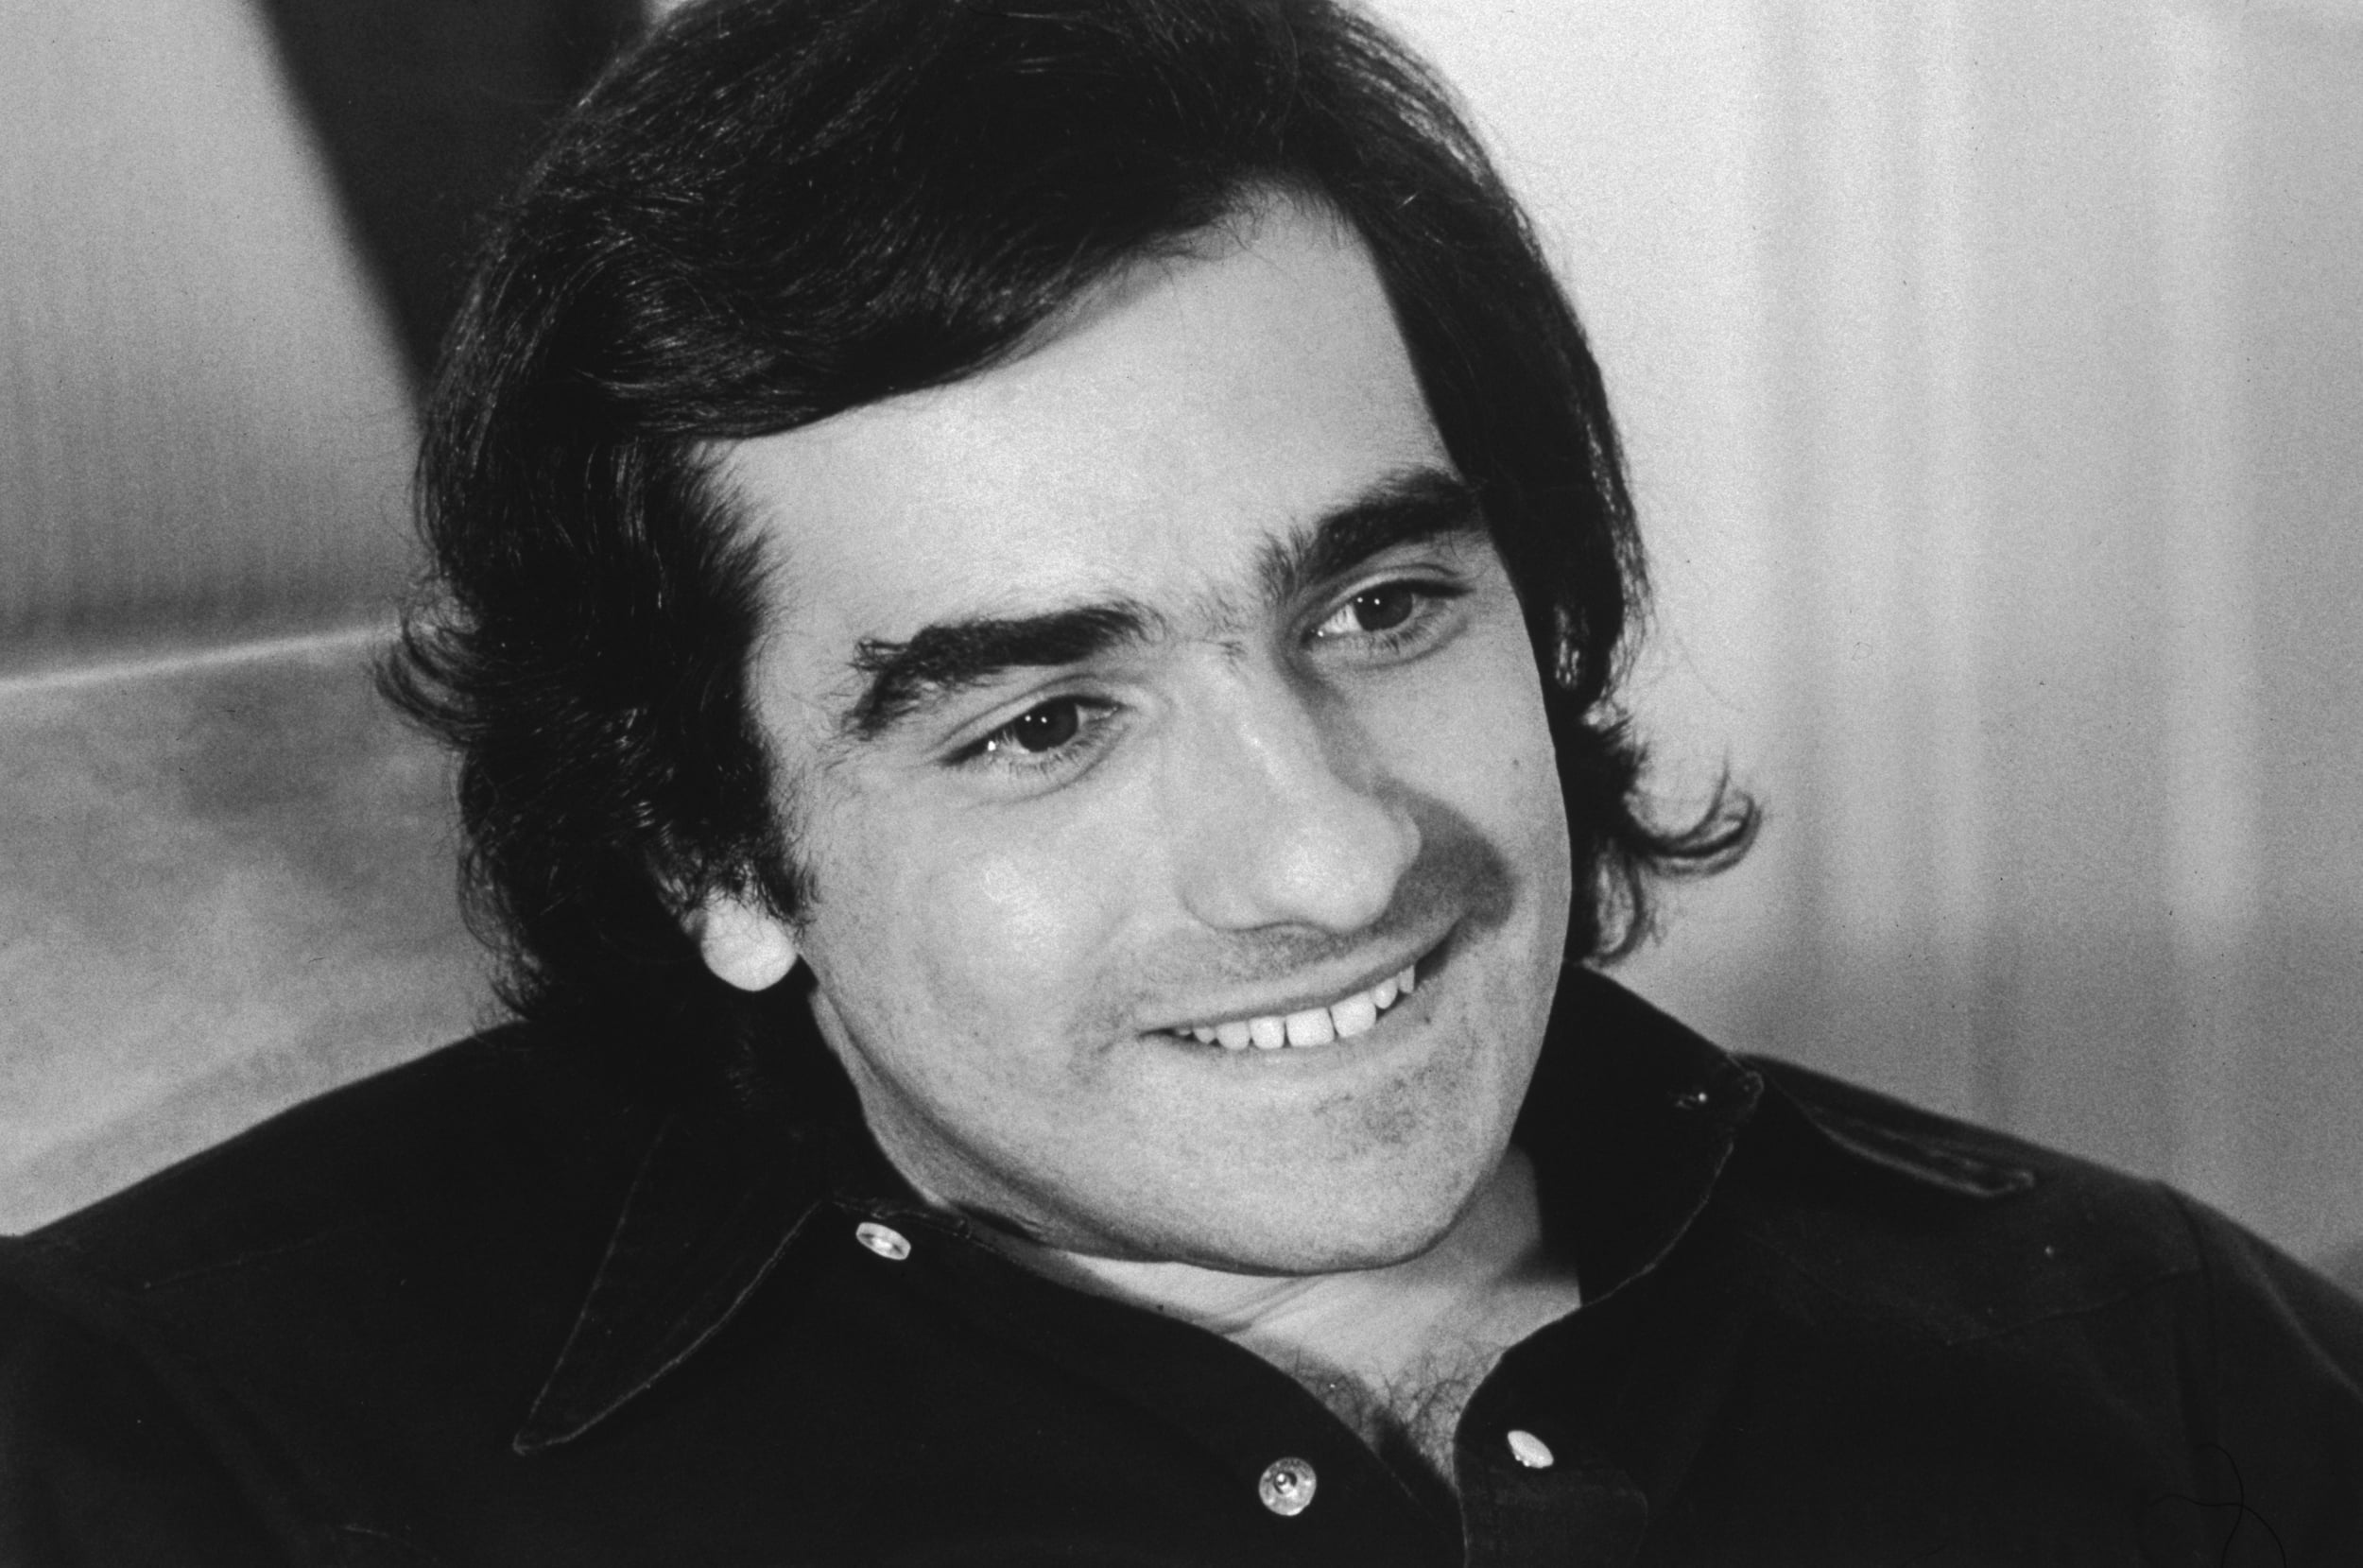 Martin Scorsese eğitim yılları